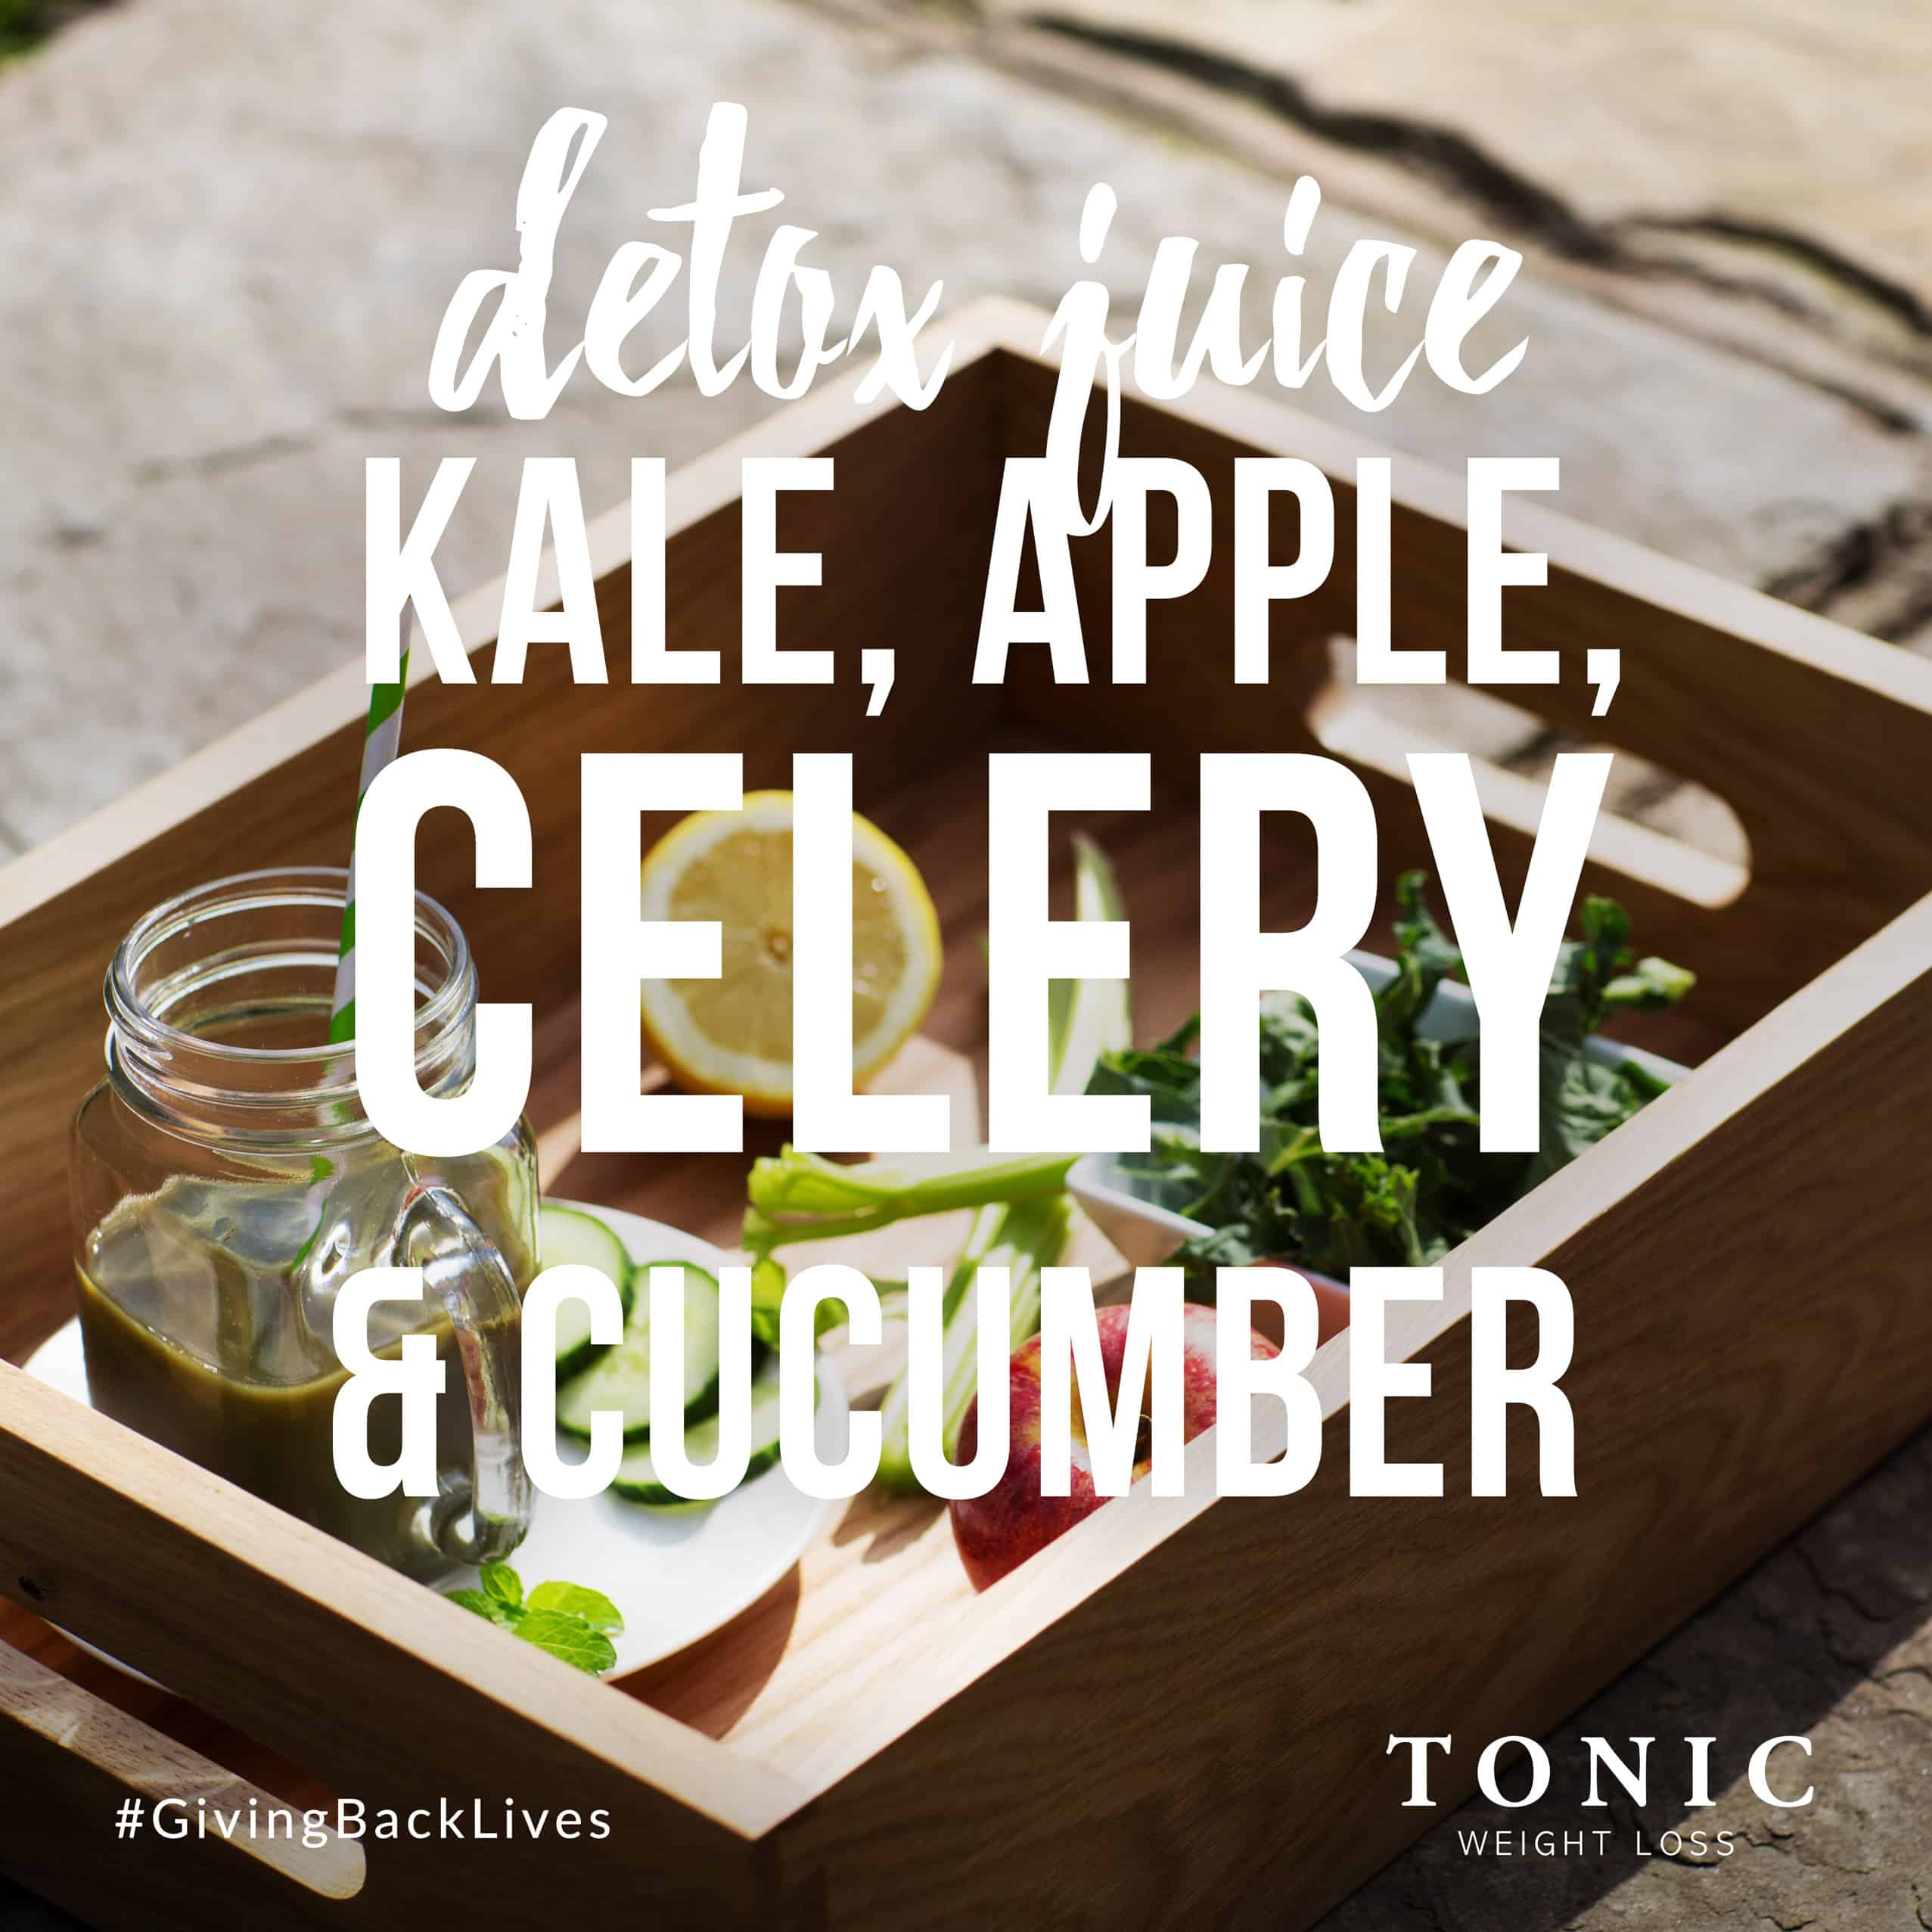 Deto-Juice-Kale-apple-celery-cucumber-juicing-nutrition